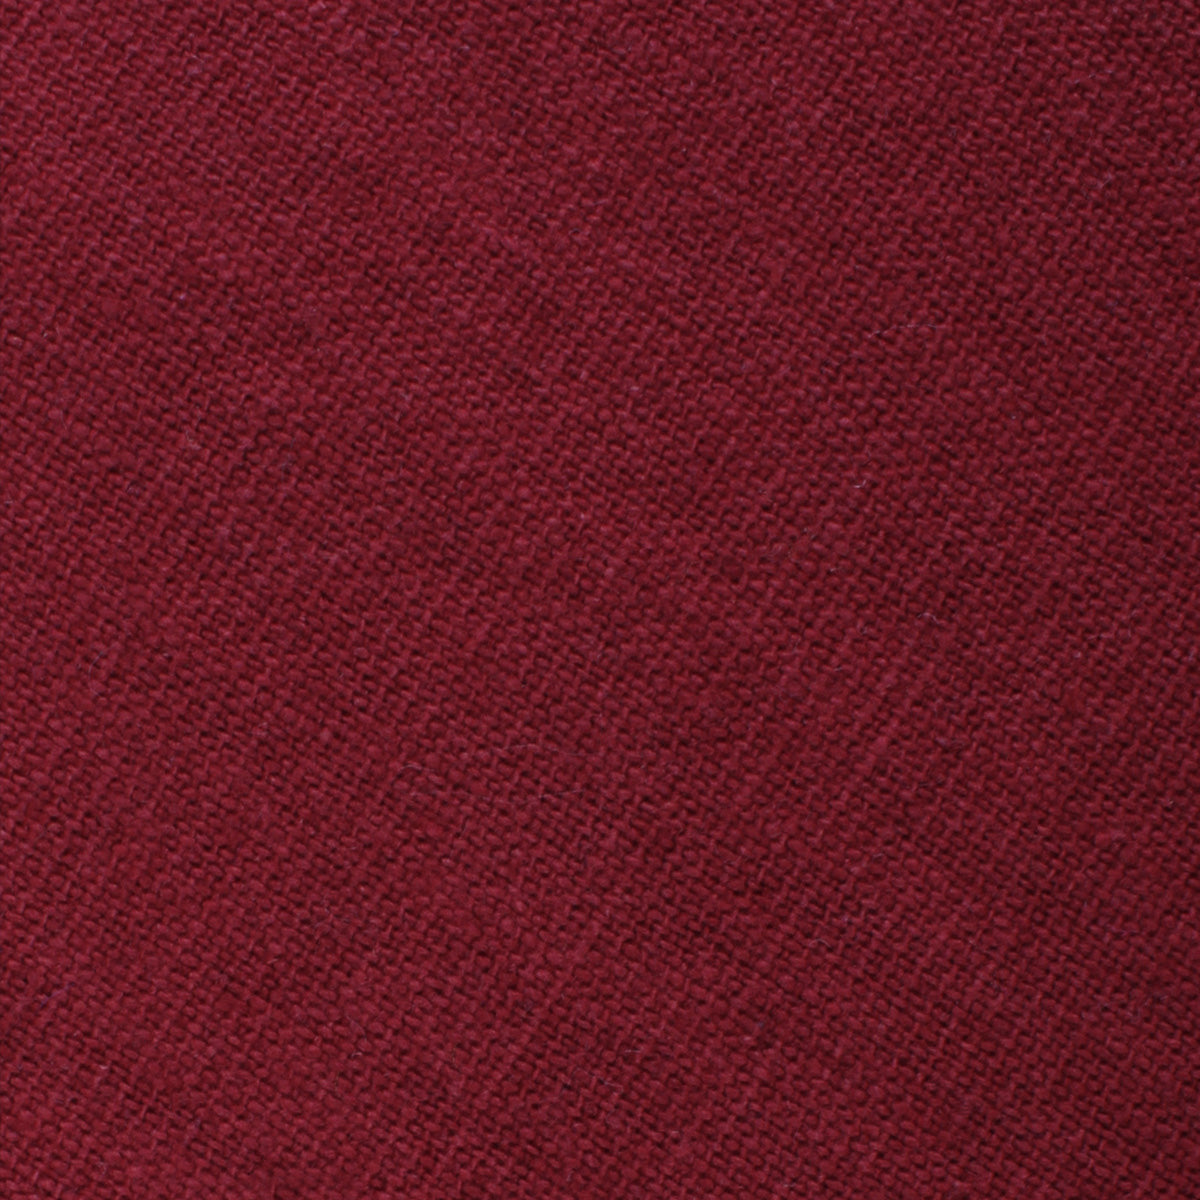 Carmine Burgundy Linen Bow Tie Fabric